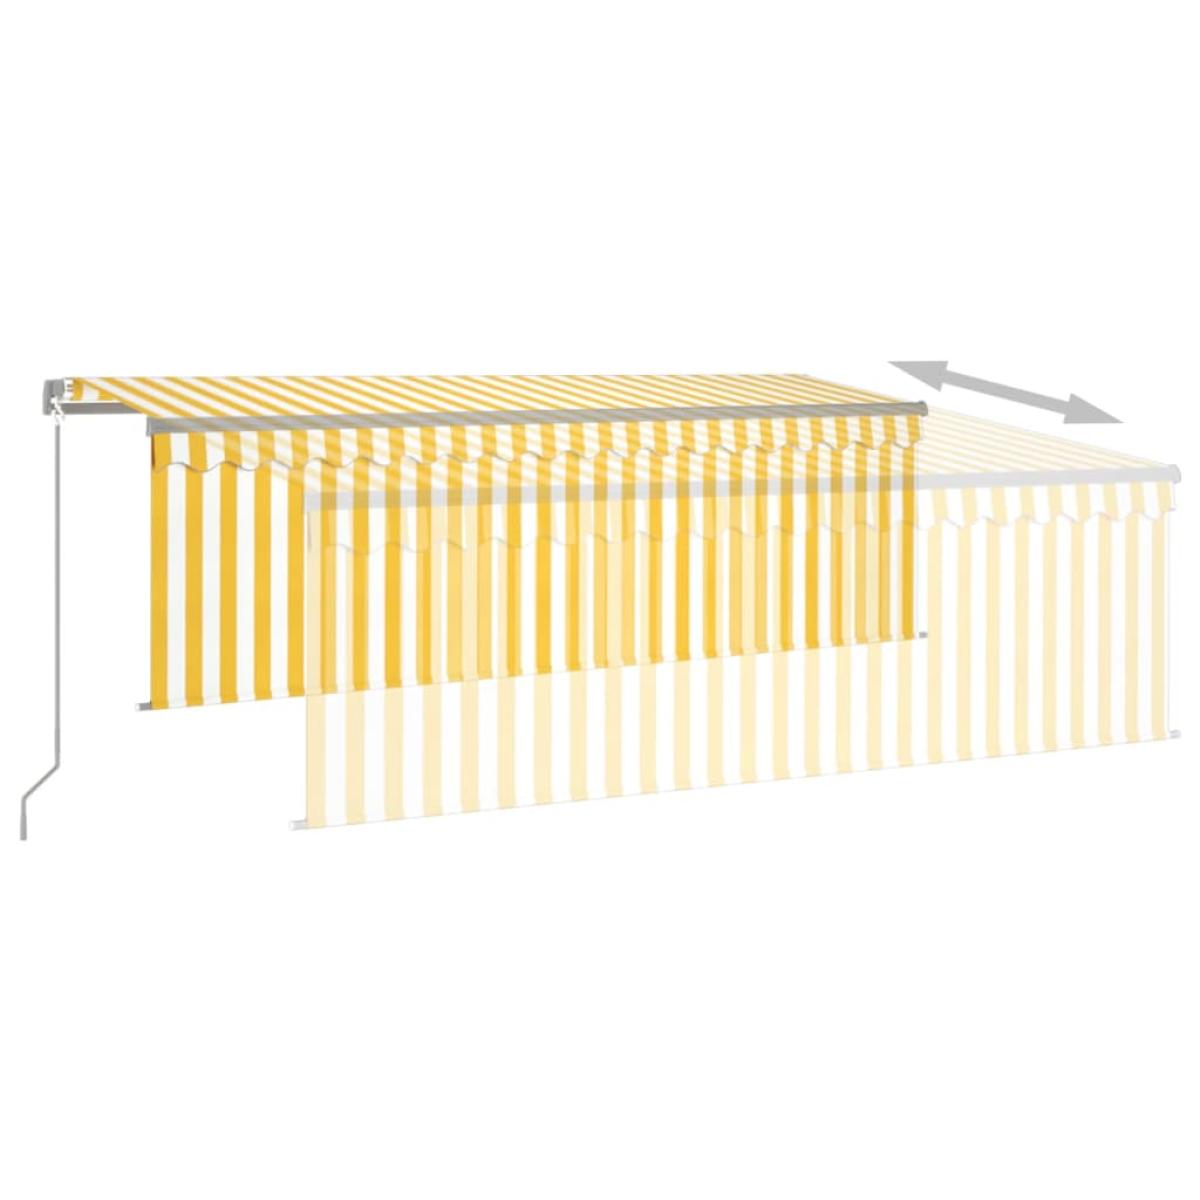 Toldo manual retráctil con persiana amarillo y blanco 4x3 m